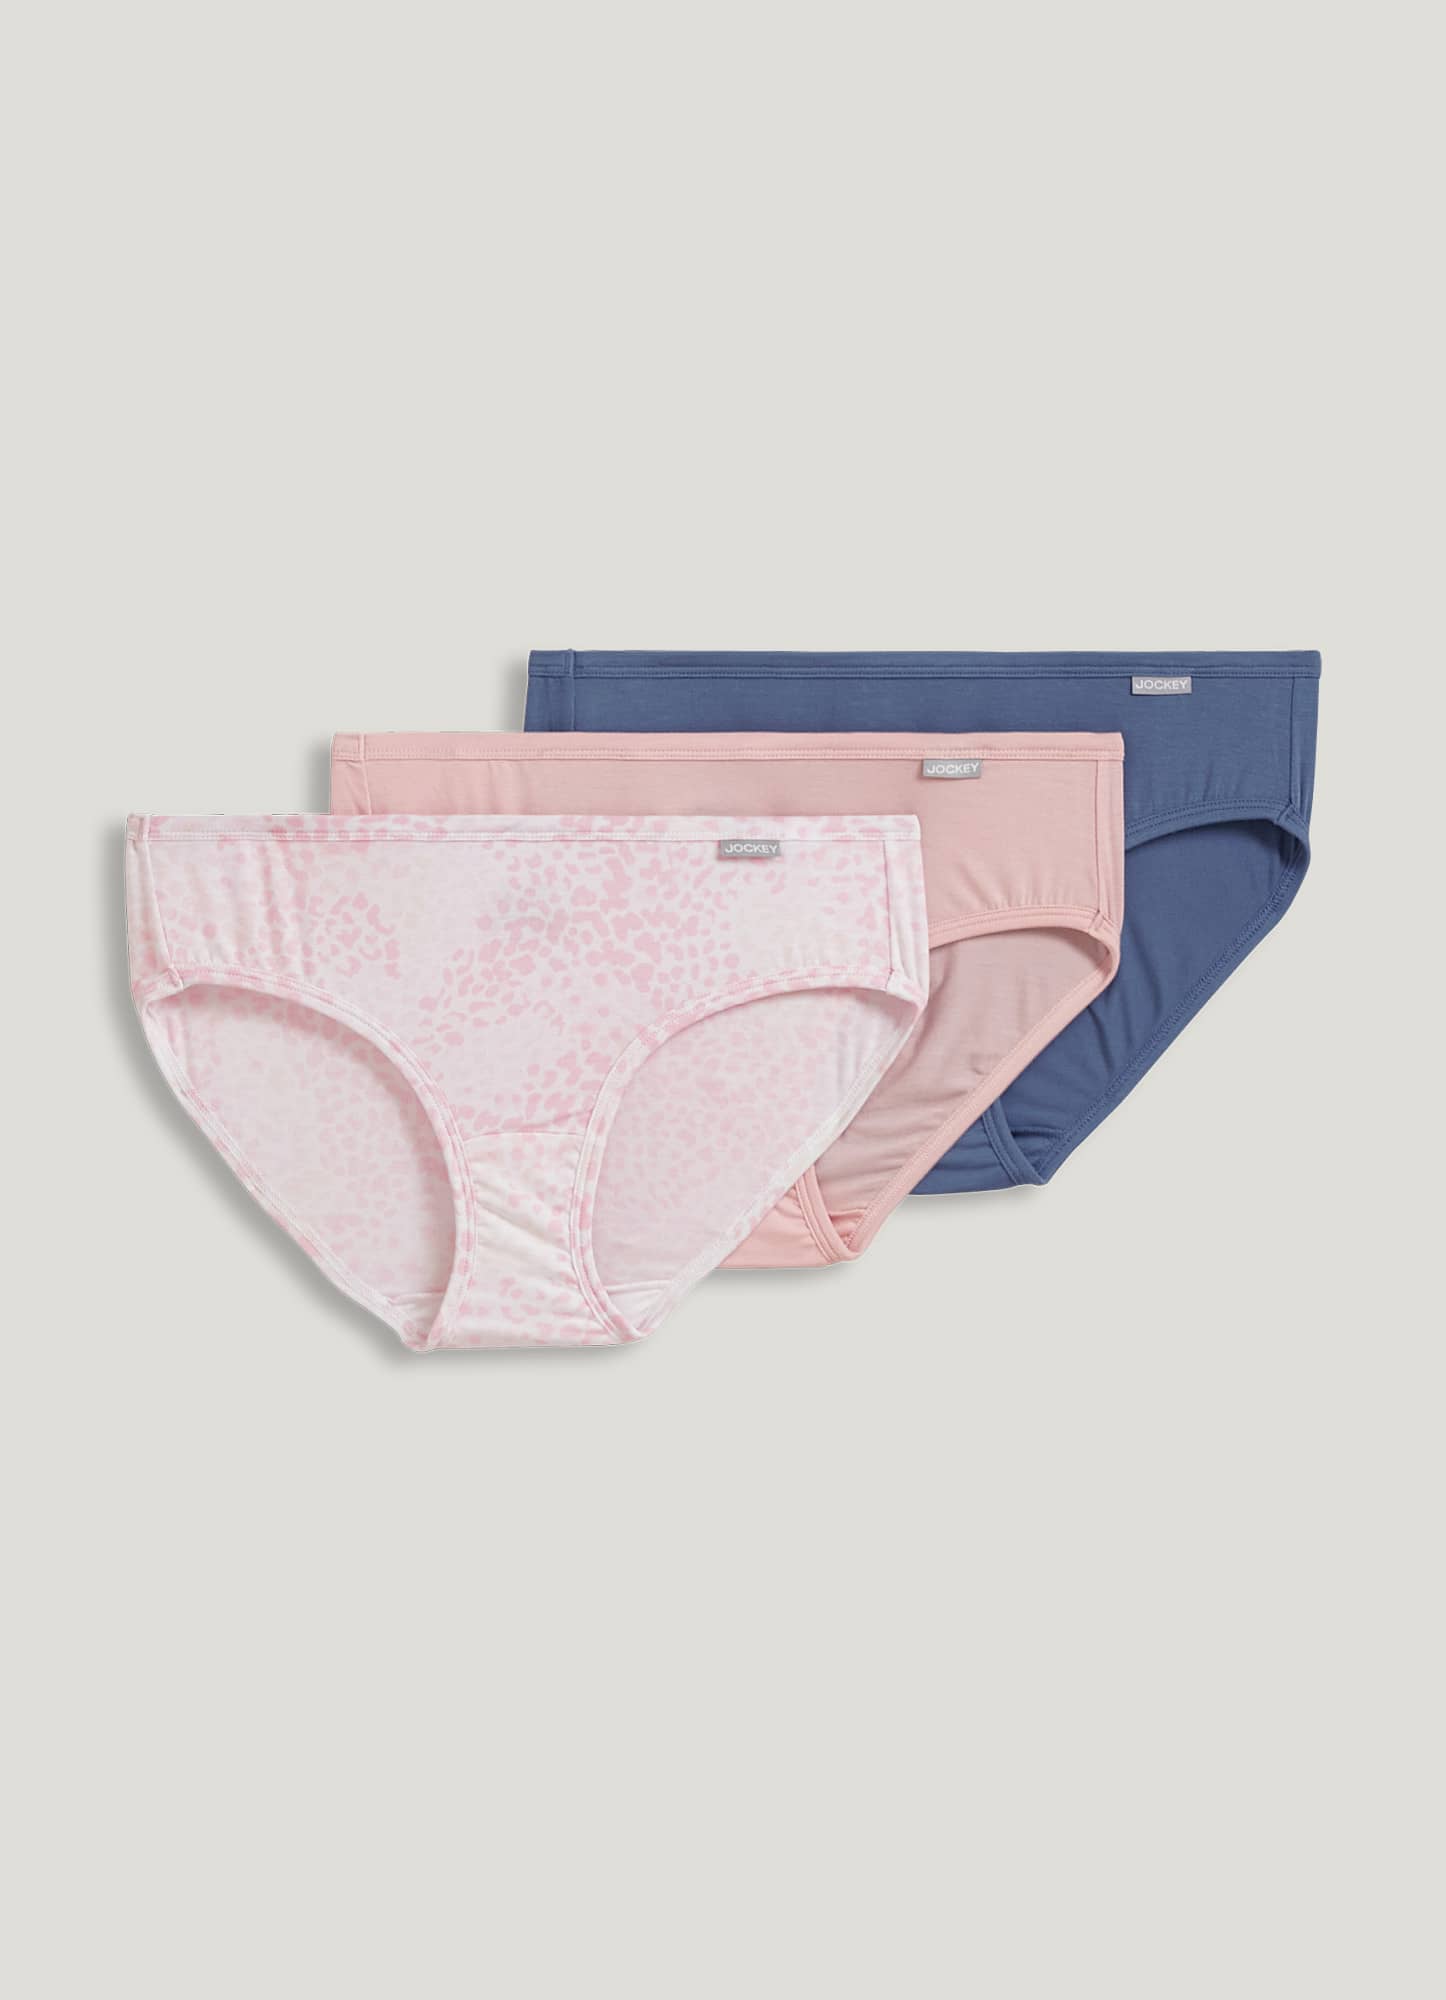 Jockey Cotton Underwear, Bikini Parisienne 3 Pack